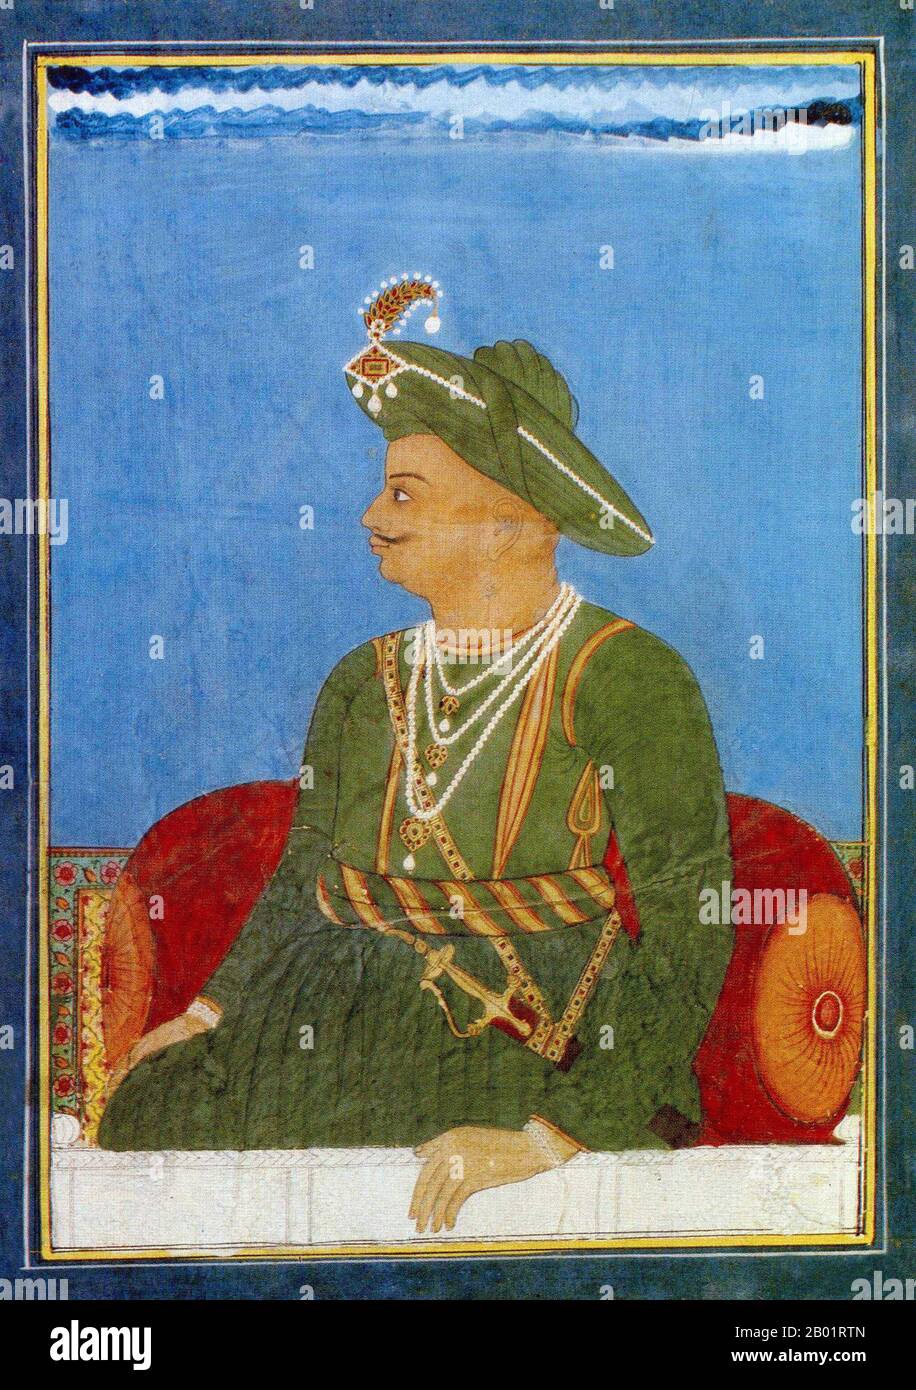 Indien: Tipu Sultan (November 1750 bis 4. Mai 1799), Herrscher des Königreichs Mysore (R. 1782–1799). Aquarellmalerei, ca. 1790. Tipu Sultan, auch bekannt als Tiger von Mysore, war de facto Herrscher des Königreichs Mysore. Er war der Sohn von Hyder Ali, damals Offizier der mysoreanischen Armee vor seinem Machtübergang, und seiner zweiten Frau Fatima oder Fakhr-un-Nissa. Er erhielt eine Reihe von Ehrentiteln und wurde als Sultan Fateh Ali Khan Shahab, Tipu Saheb, Bahadur Khan Tipu Sultan oder Fatih Ali Khan Tipu Sultan Bahadur bezeichnet. Stockfoto